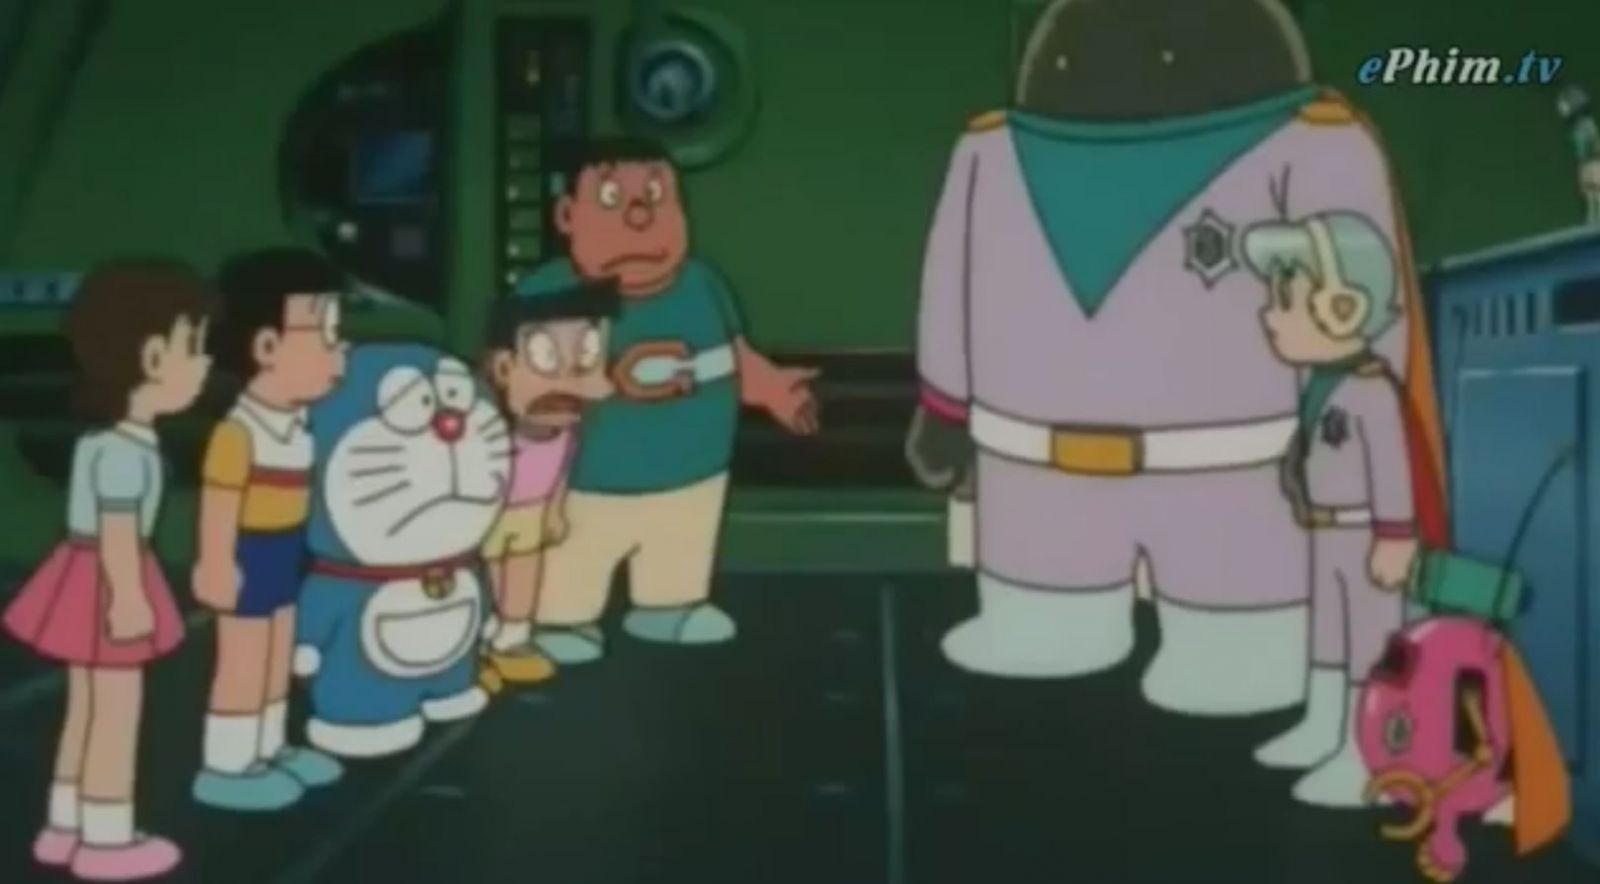 Nobita và Vũ trụ phiêu lưu ký, Doraemon tập dài Nobita và Vũ trụ phiêu lưu ký, Doreamon tập dài Nobita và Vũ trụ phiêu lưu ký lồng tiếng, Nobita và Vũ trụ phiêu lưu ký lồng tiếng, Nobita và Vũ trụ phiêu lưu ký thuyết minh, Hoạt hình Doraemon tập dài, Phim hoạt hình Doraemon tập dài, Xem hoạt hình Doraemon tập dài, Trọn bộ Doraemon tập dài thuyết minh, Doraemon tập dài Cuộc chiến với Quỷ Kamat, Hòn đảo kỳ tích Doraemon tập dài, Doraemon tập dài Nobita và Cuộc chiến vũ trụ, Doraemon tập dài Nobita Tây Du Ký, Doraemon tập dài Tây Du Ký, Doraemon tập dài Nobita Tây Du Ký thuyết minh, Doraemon tập dài Nobita và Binh đoàn người sắt, Doraemon tập dài Nobita lạc vào xứ Quỷ thuyết minh, Doraemon tập dài Lâu đài dưới đáy biển, Phim hoạt hình Thanh Gươm Diệt Quỷ 2020 Full HD Việt sub, Phim hoạt hình chiếu Rạp Thanh Gươm Diệt Quỷ 2020 Full HD, Phim hoạt hình, Hoạt hình Songoku 1986 lồng tiếng trọn bộ, Hoạt hình 7 Viên Ngọc Rồng 1986 trọn bộ lồng tiếng